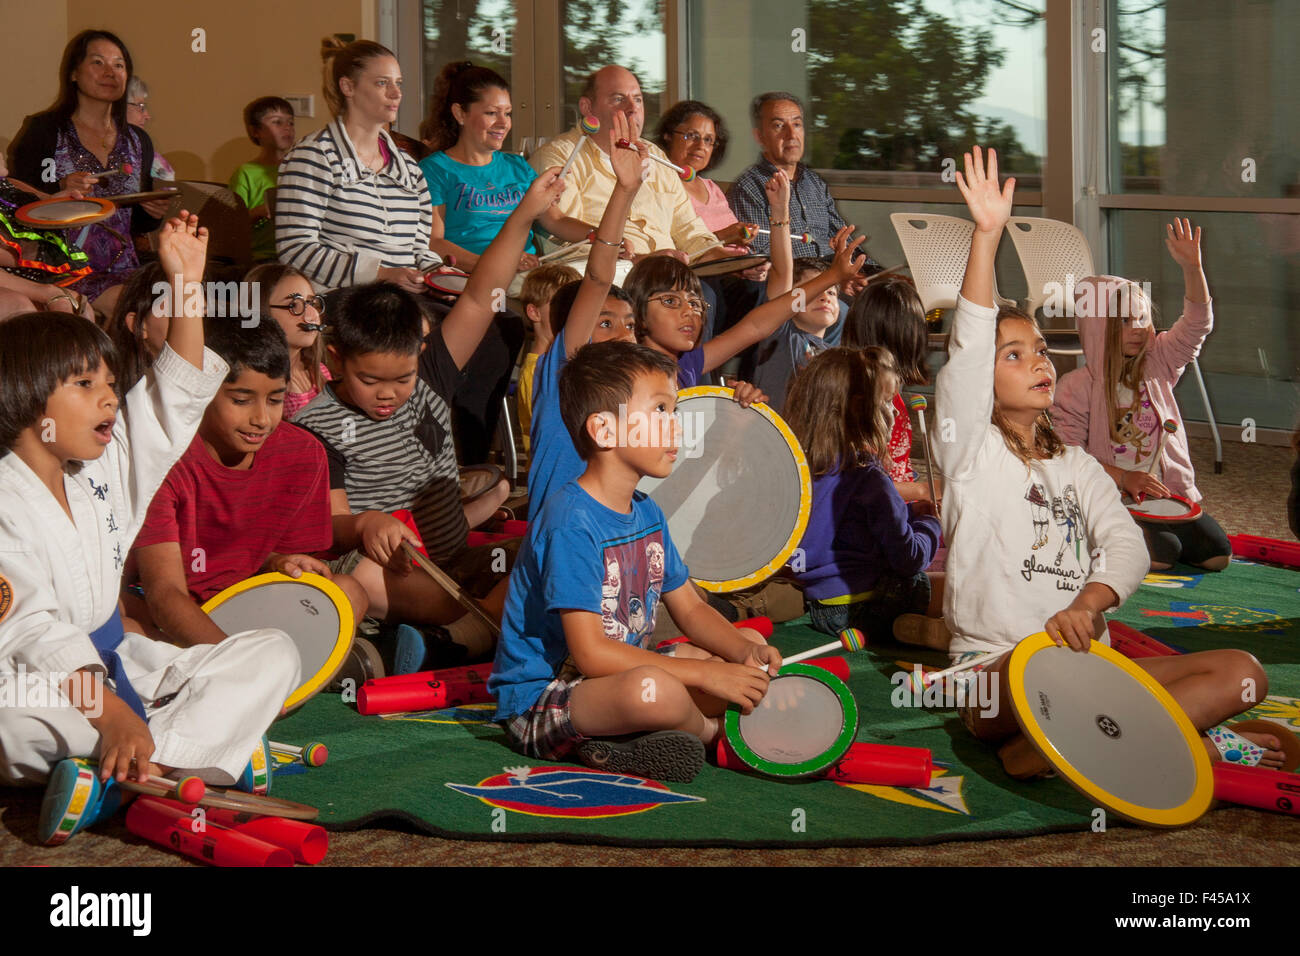 Halten Sie kleine Trommeln, express gemischtrassigen Kinder ihre Begeisterung für das Spielen in einer Rhythmus-Band bei einem Laguna Niguel, CA, Stadtbibliothek Mehrzweckraum. Beachten Sie die Eltern im Hintergrund. Stockfoto